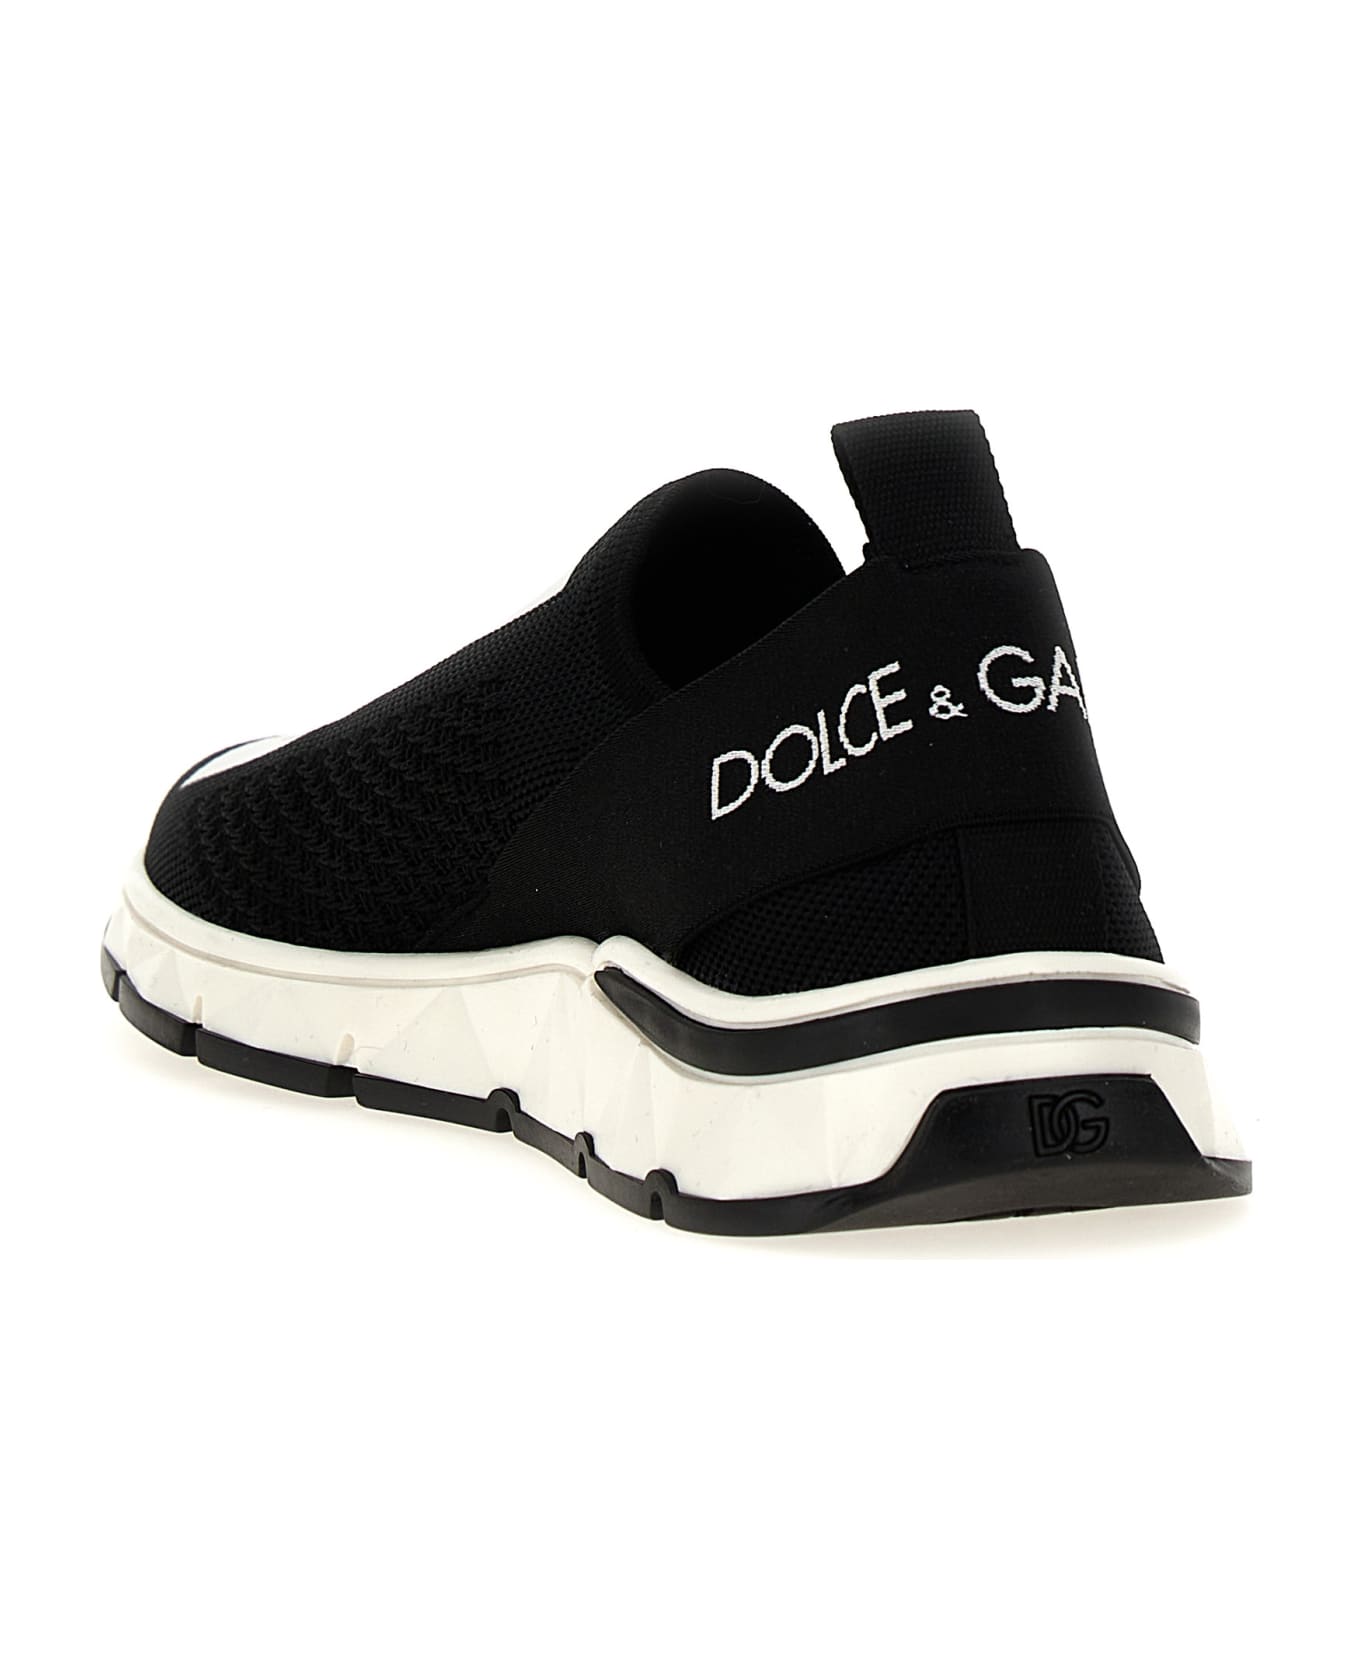 Dolce & Gabbana 'sorrento 2,0' Sneakers - White/Black